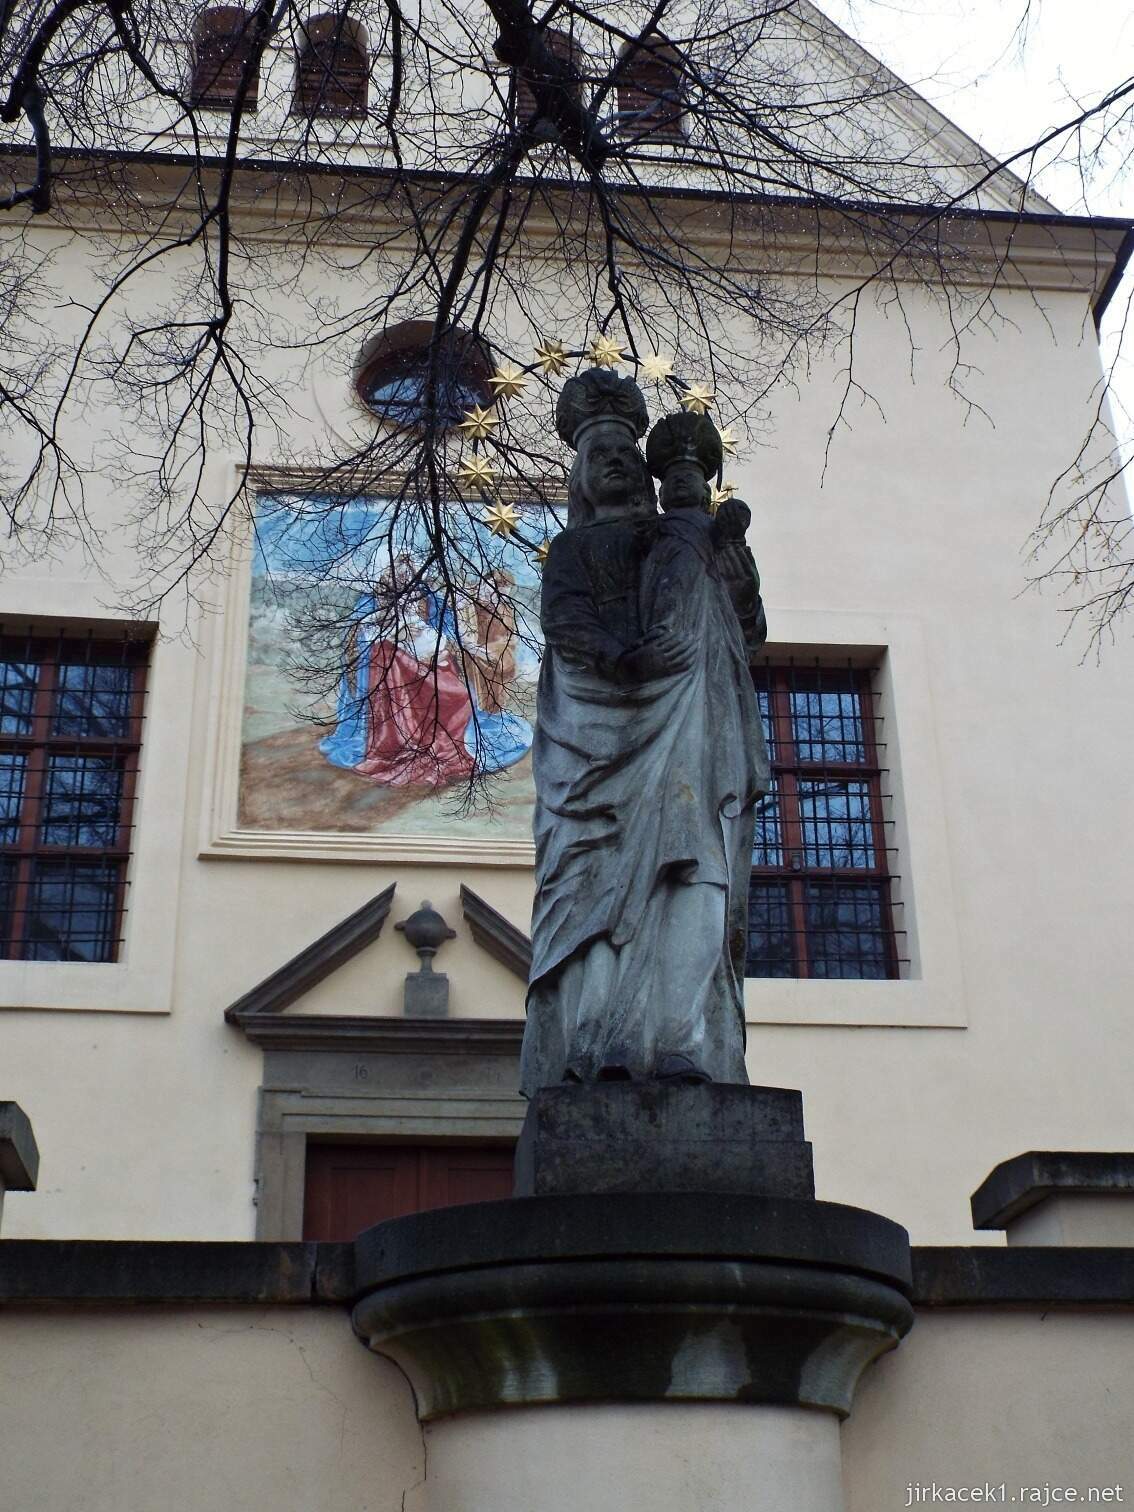 C - Fulnek - kostel sv. Josefa a kapucínský klášter 04 - socha Panny Marie před kostelem